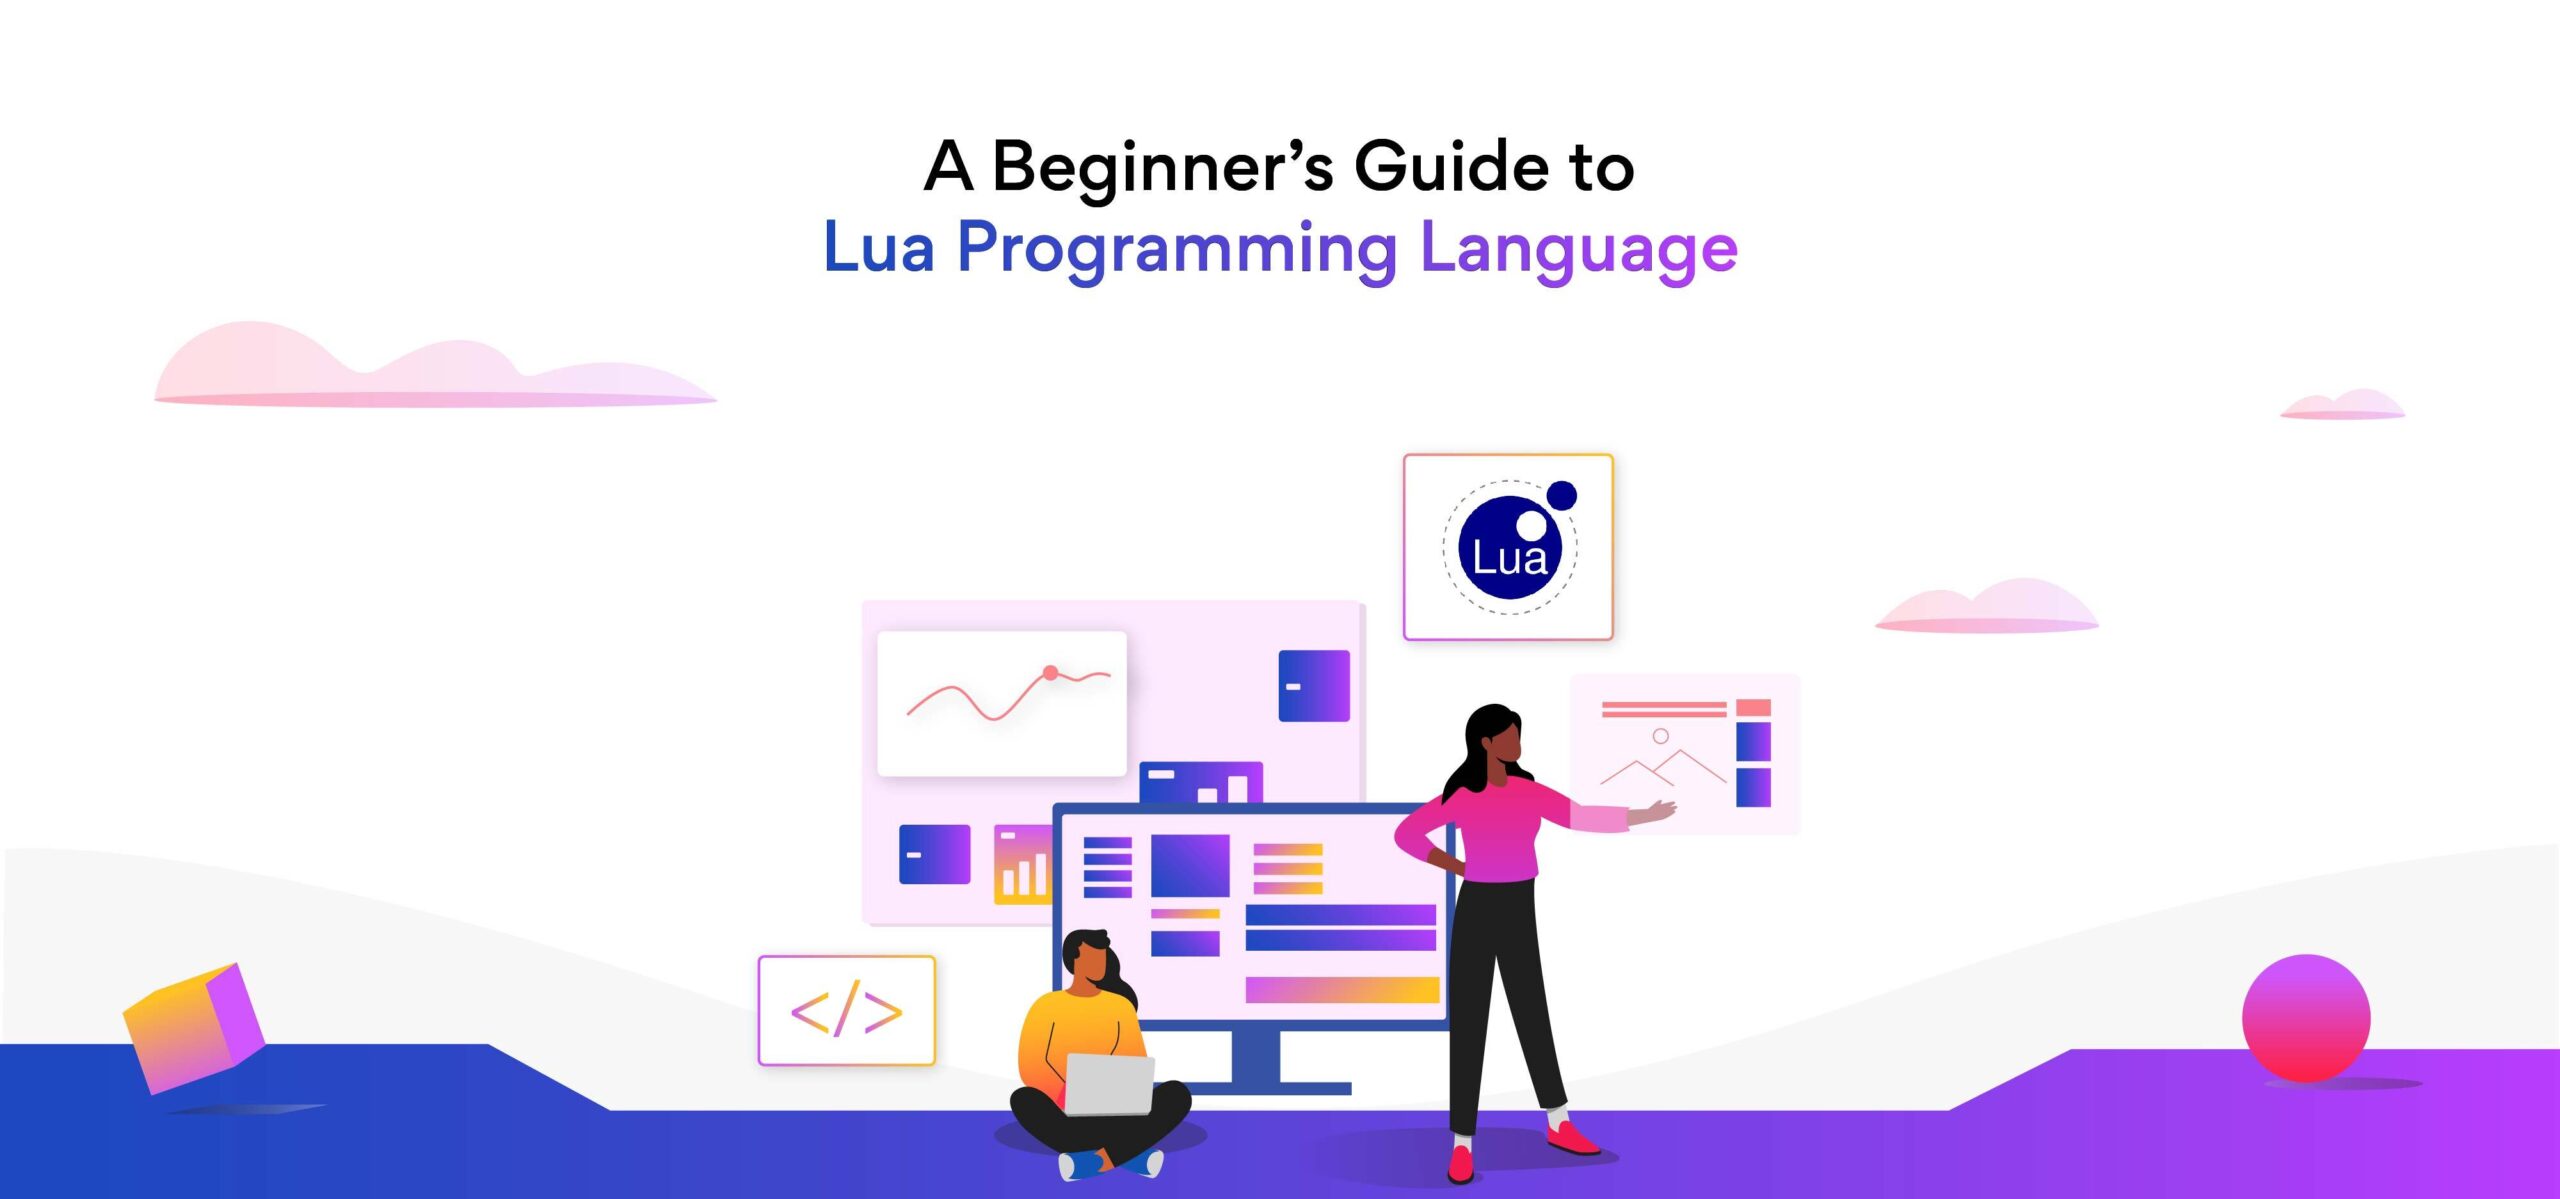 Brazilian Lua Programming Language: A Brief Guide